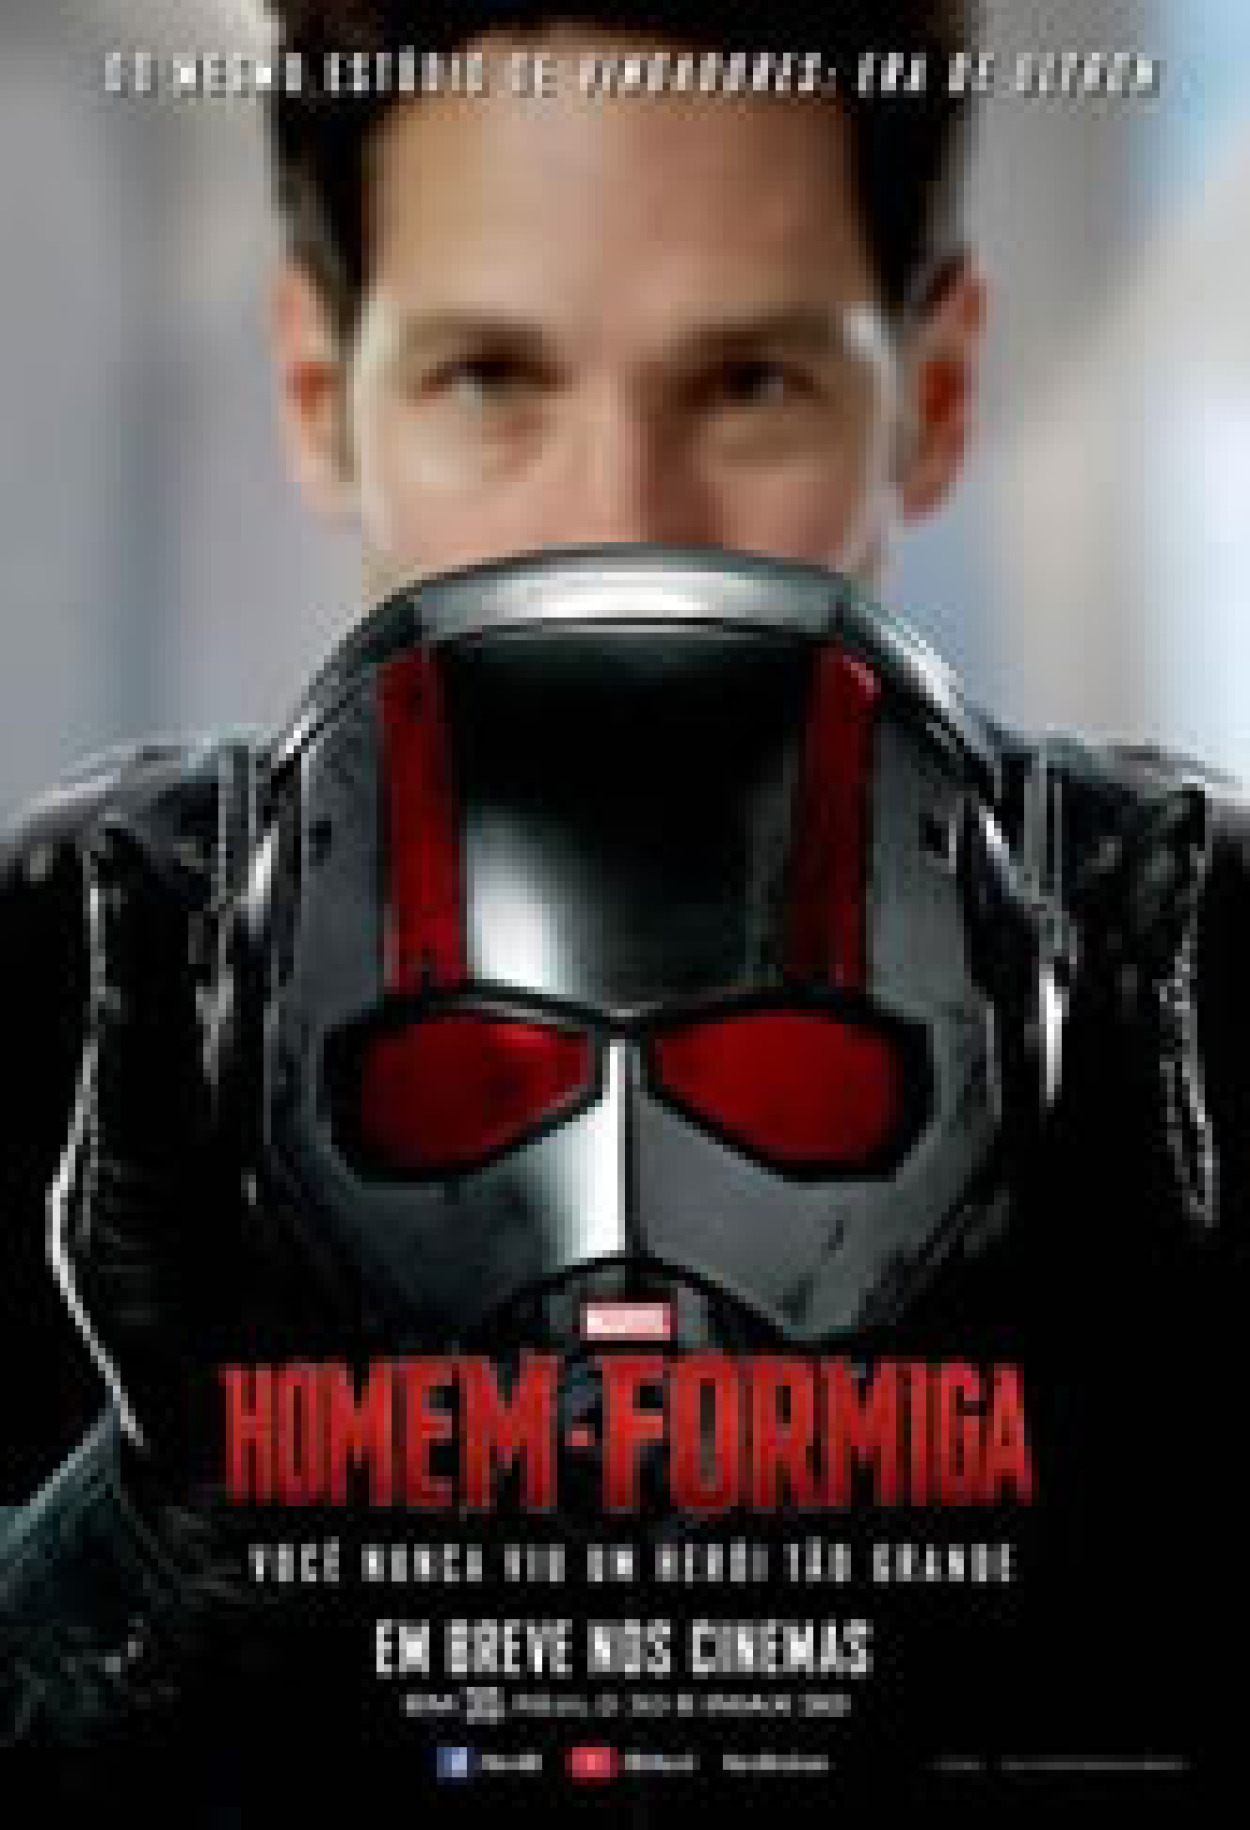 Homem-Formiga (Filme), Trailer, Sinopse e Curiosidades - Cinema10